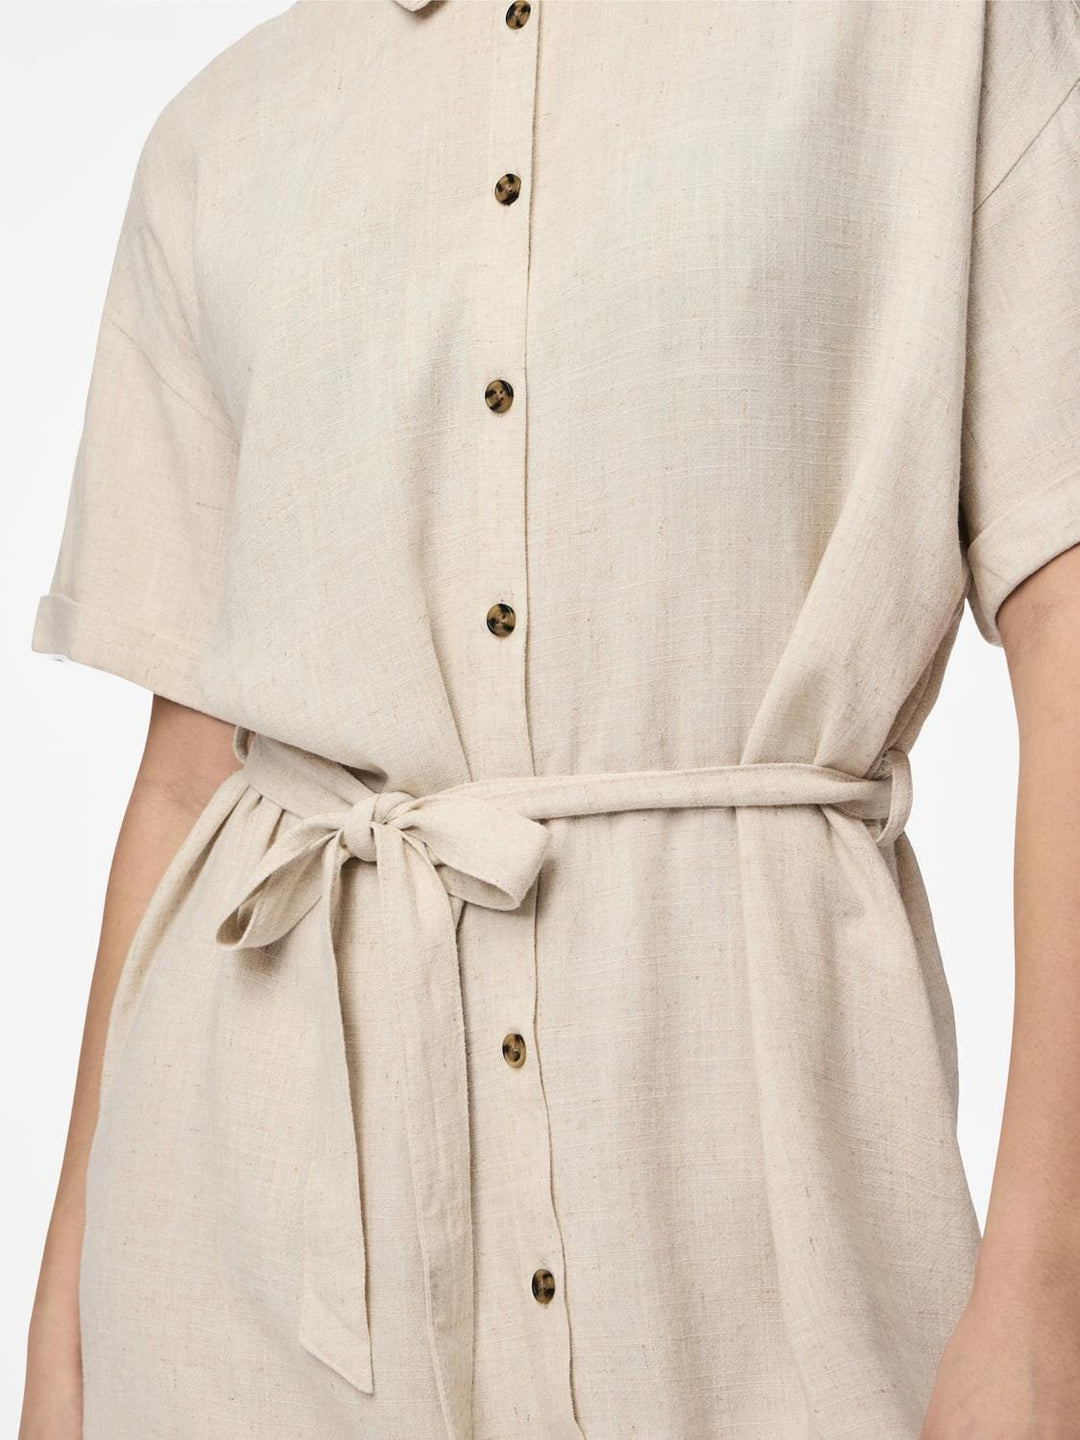 Pieces - Pcvinsty Ss Linen Shirt Dress - 4535249 Oatmeal Kjoler 